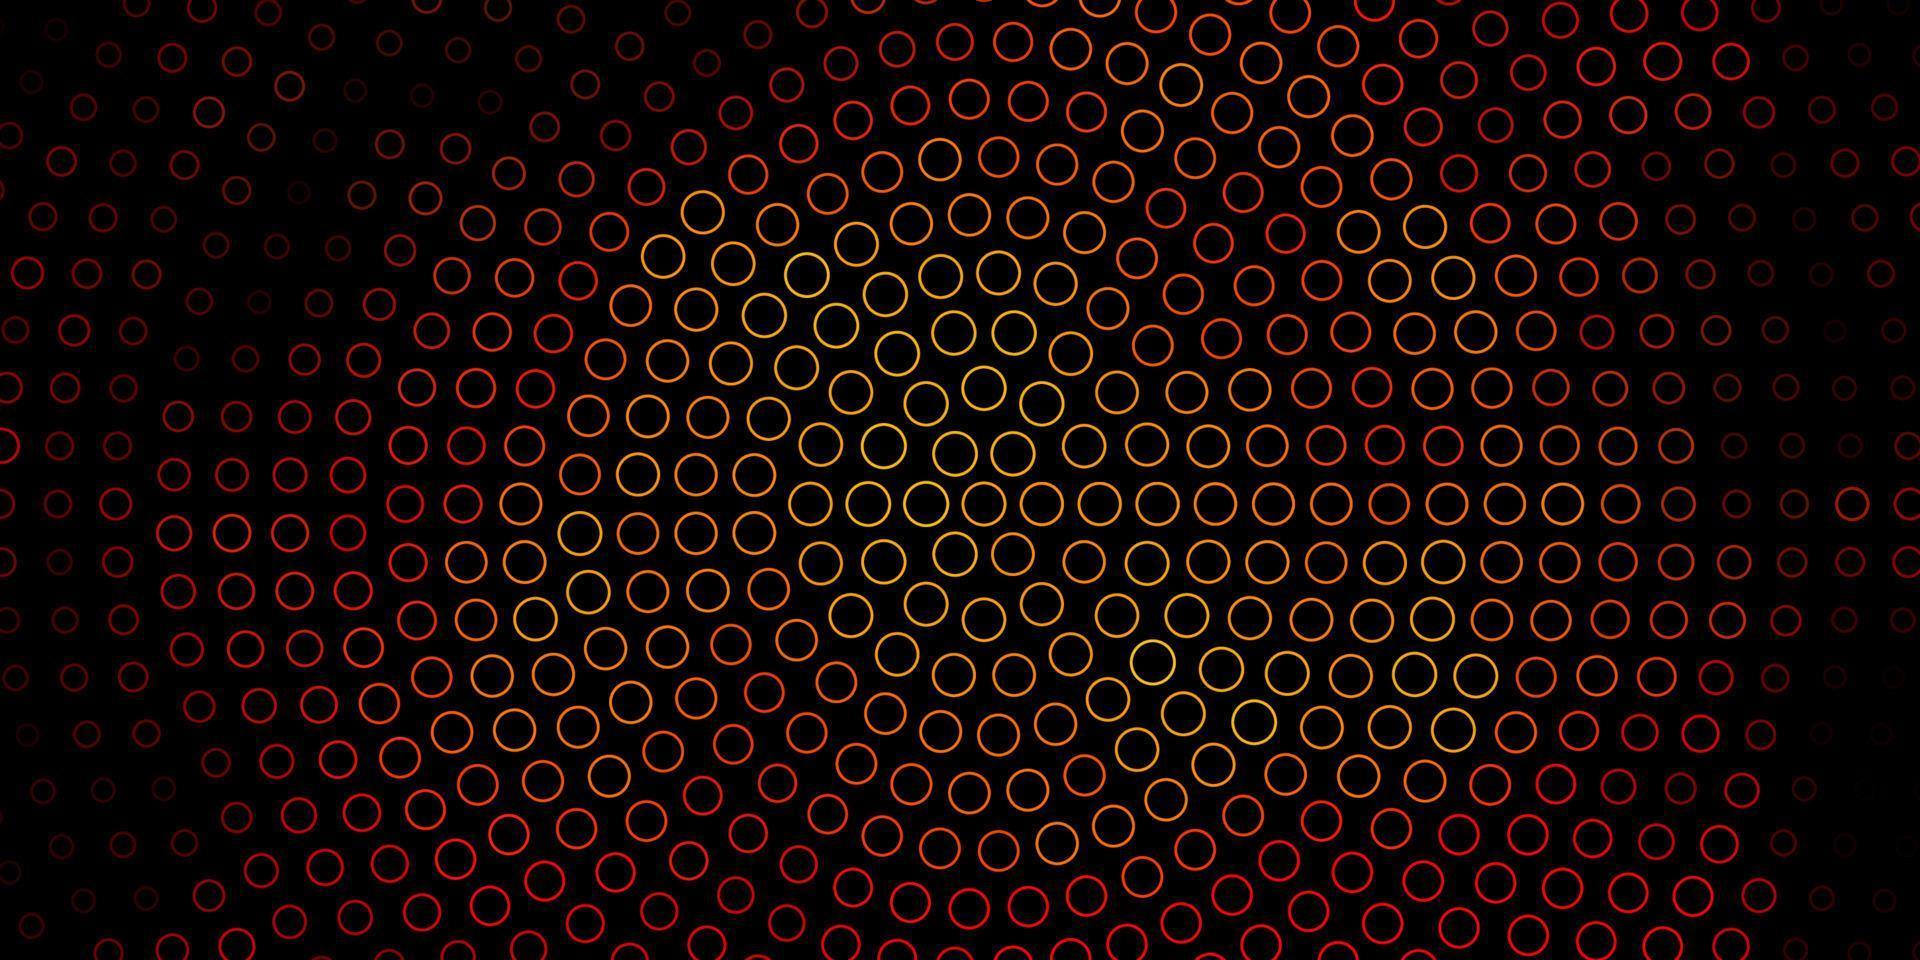 plantilla de vector naranja oscuro con círculos.